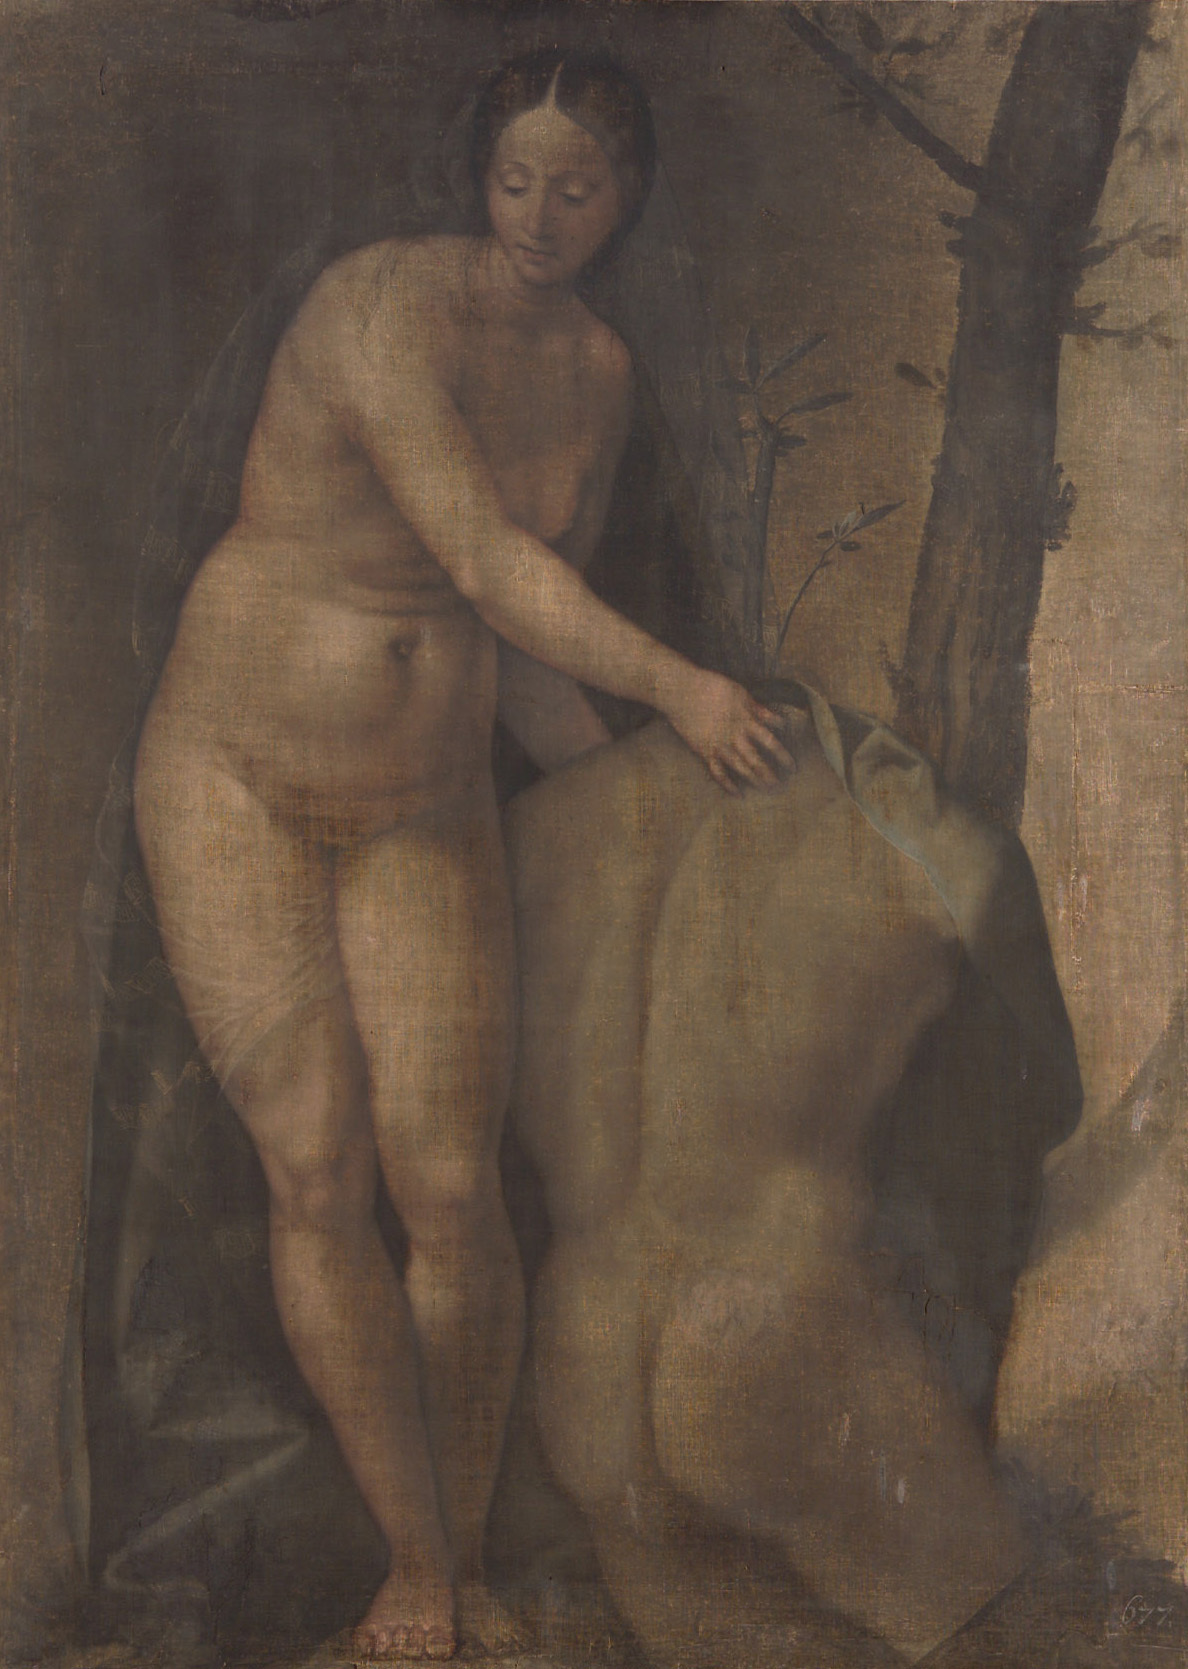 Akt kobiecy z męskim torsem by Girolamo da Treviso - ok. 1525 - 107.5 cm × 77.5 cm 